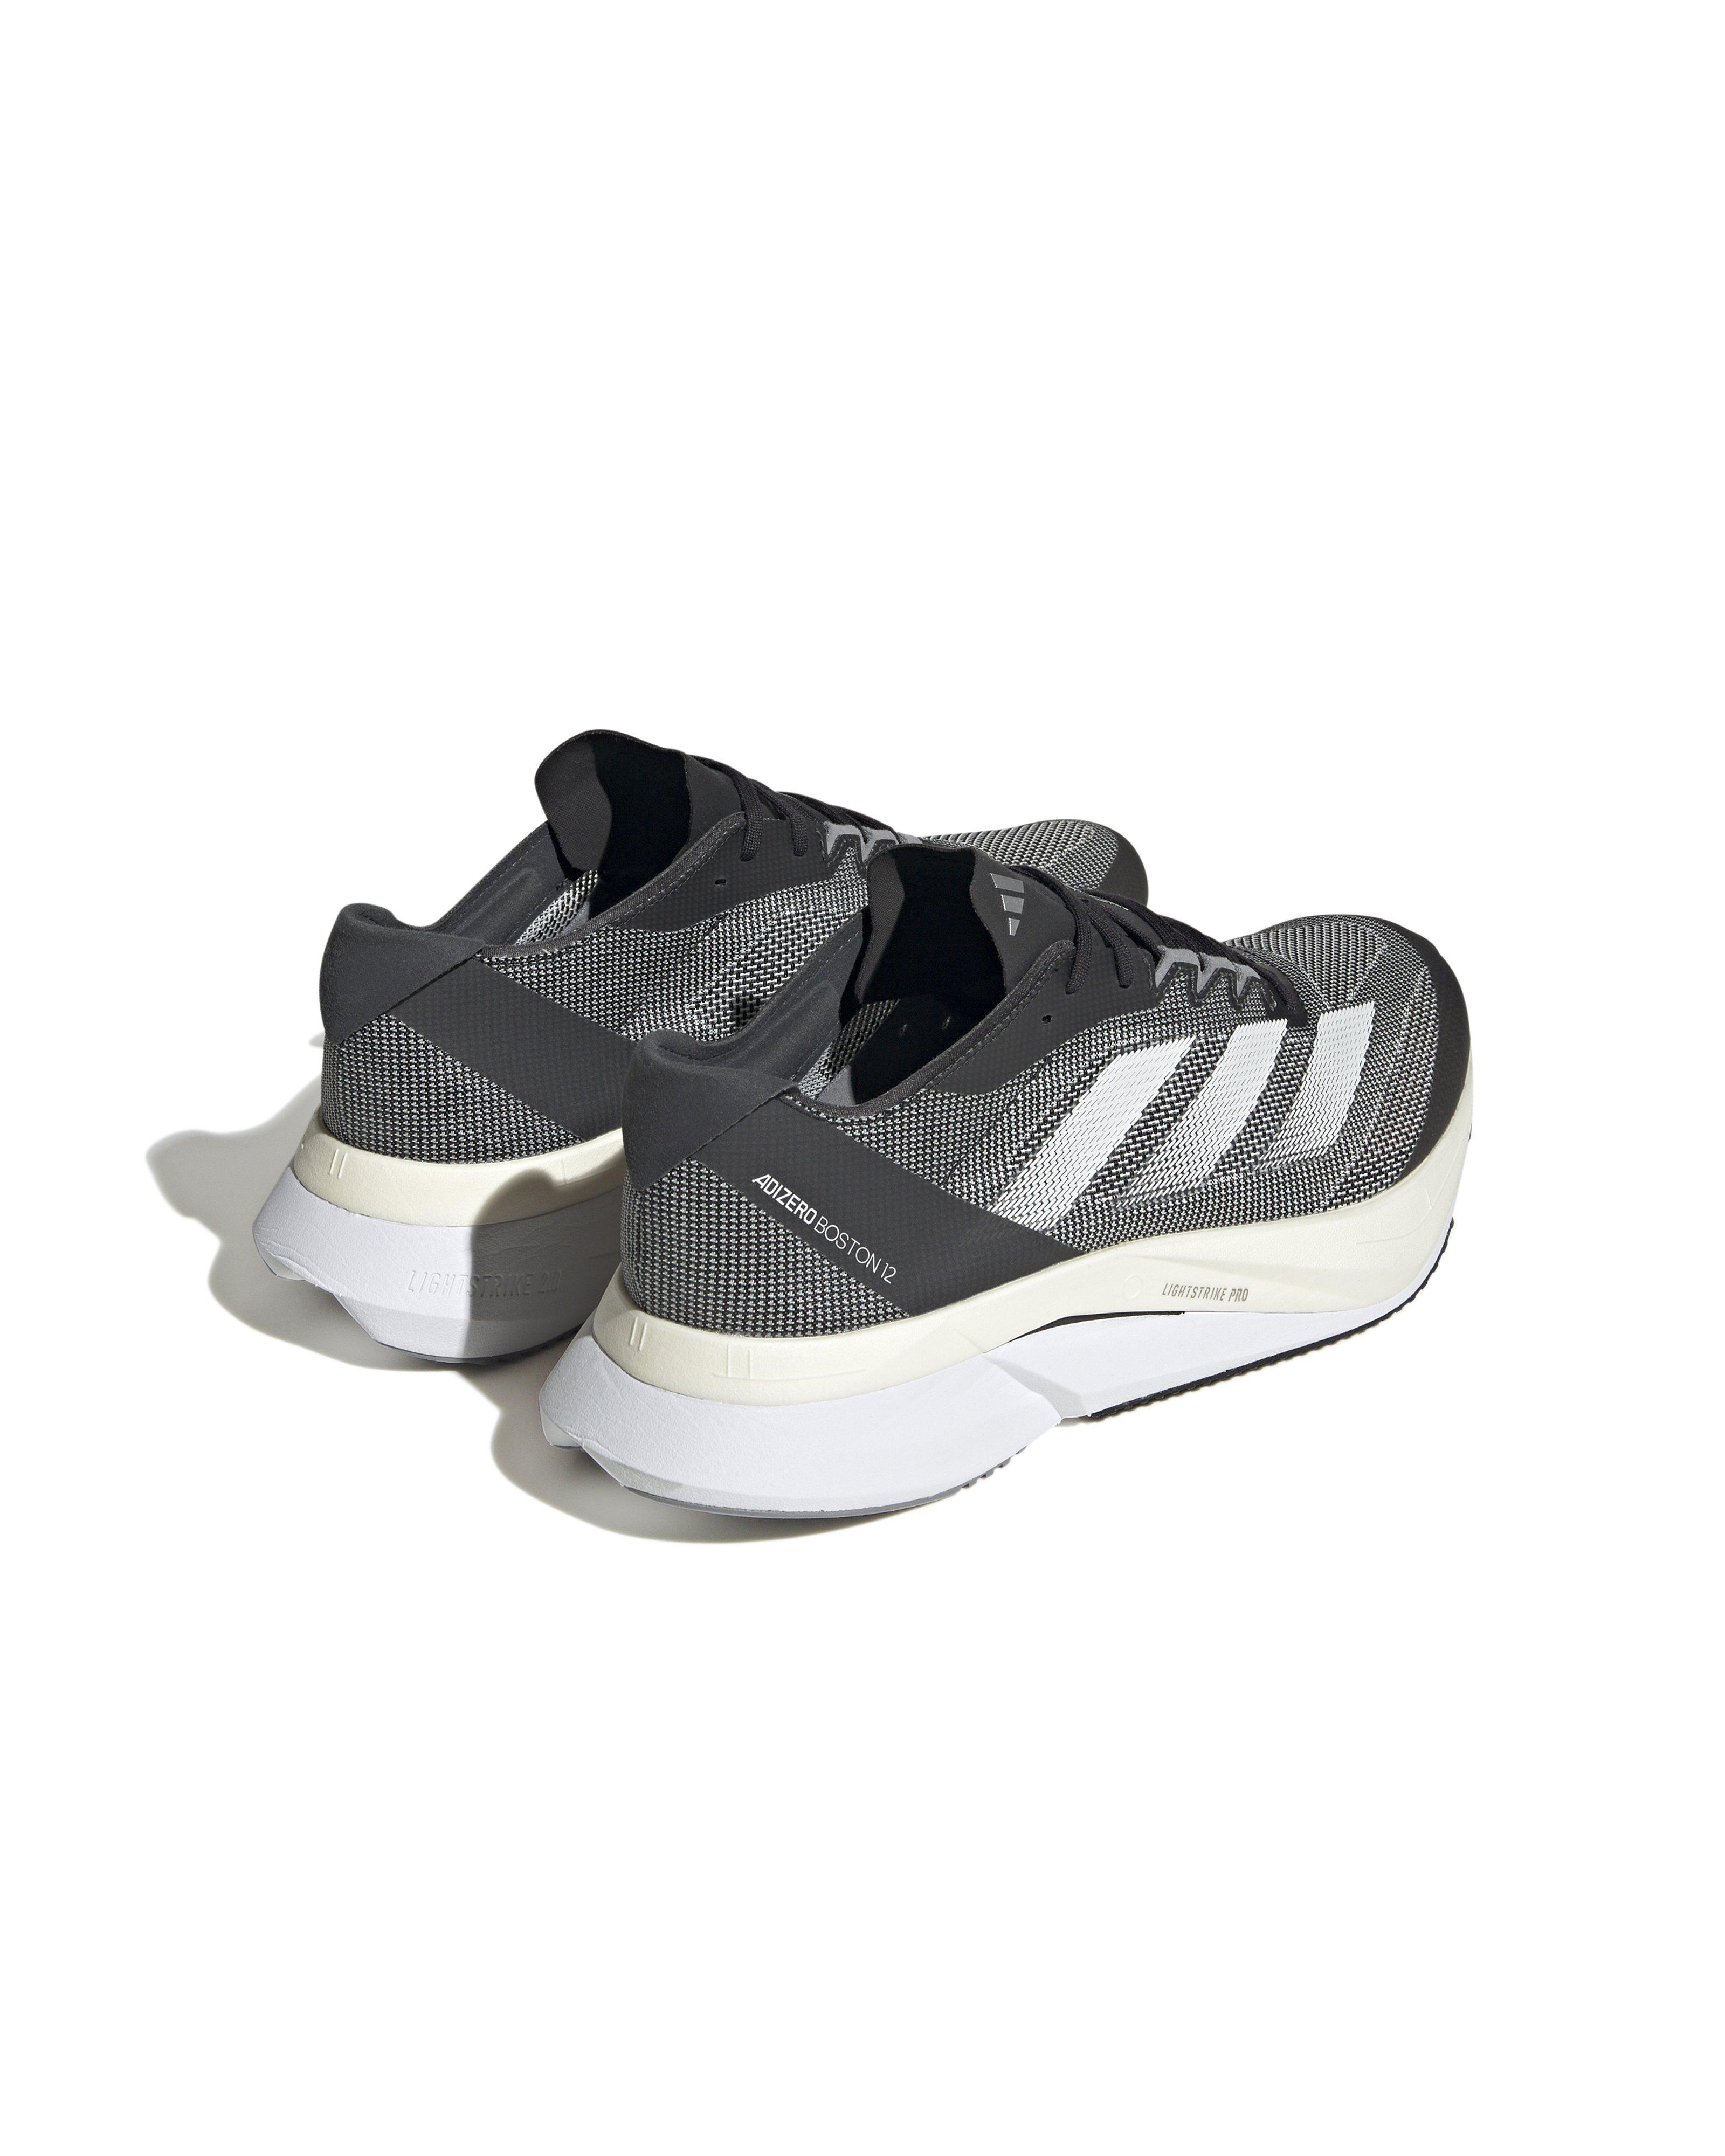 Adidas Men’s ADIZERO BOSTON 12 Road Running Shoes -  Black